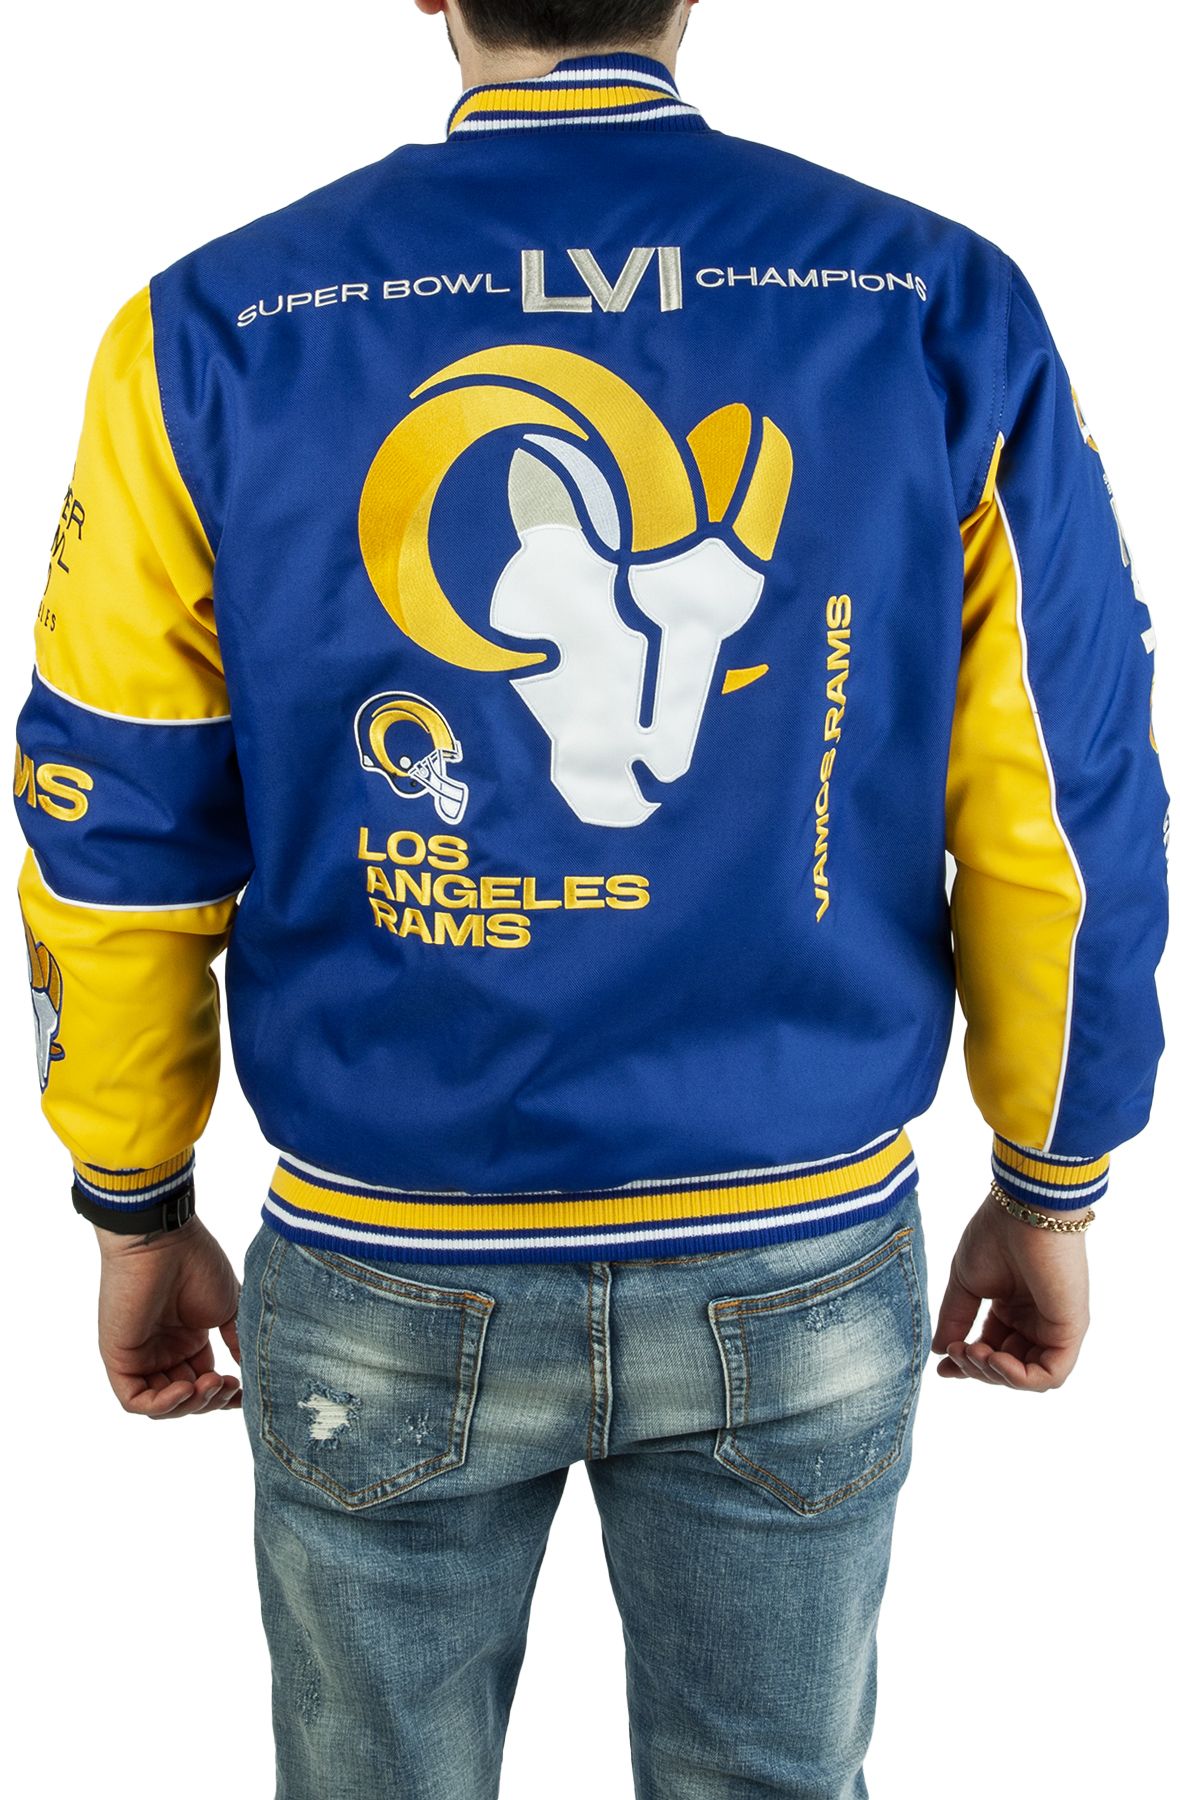 Super Bowl LVI Champs La Rams Blue/White Varsity Jacket